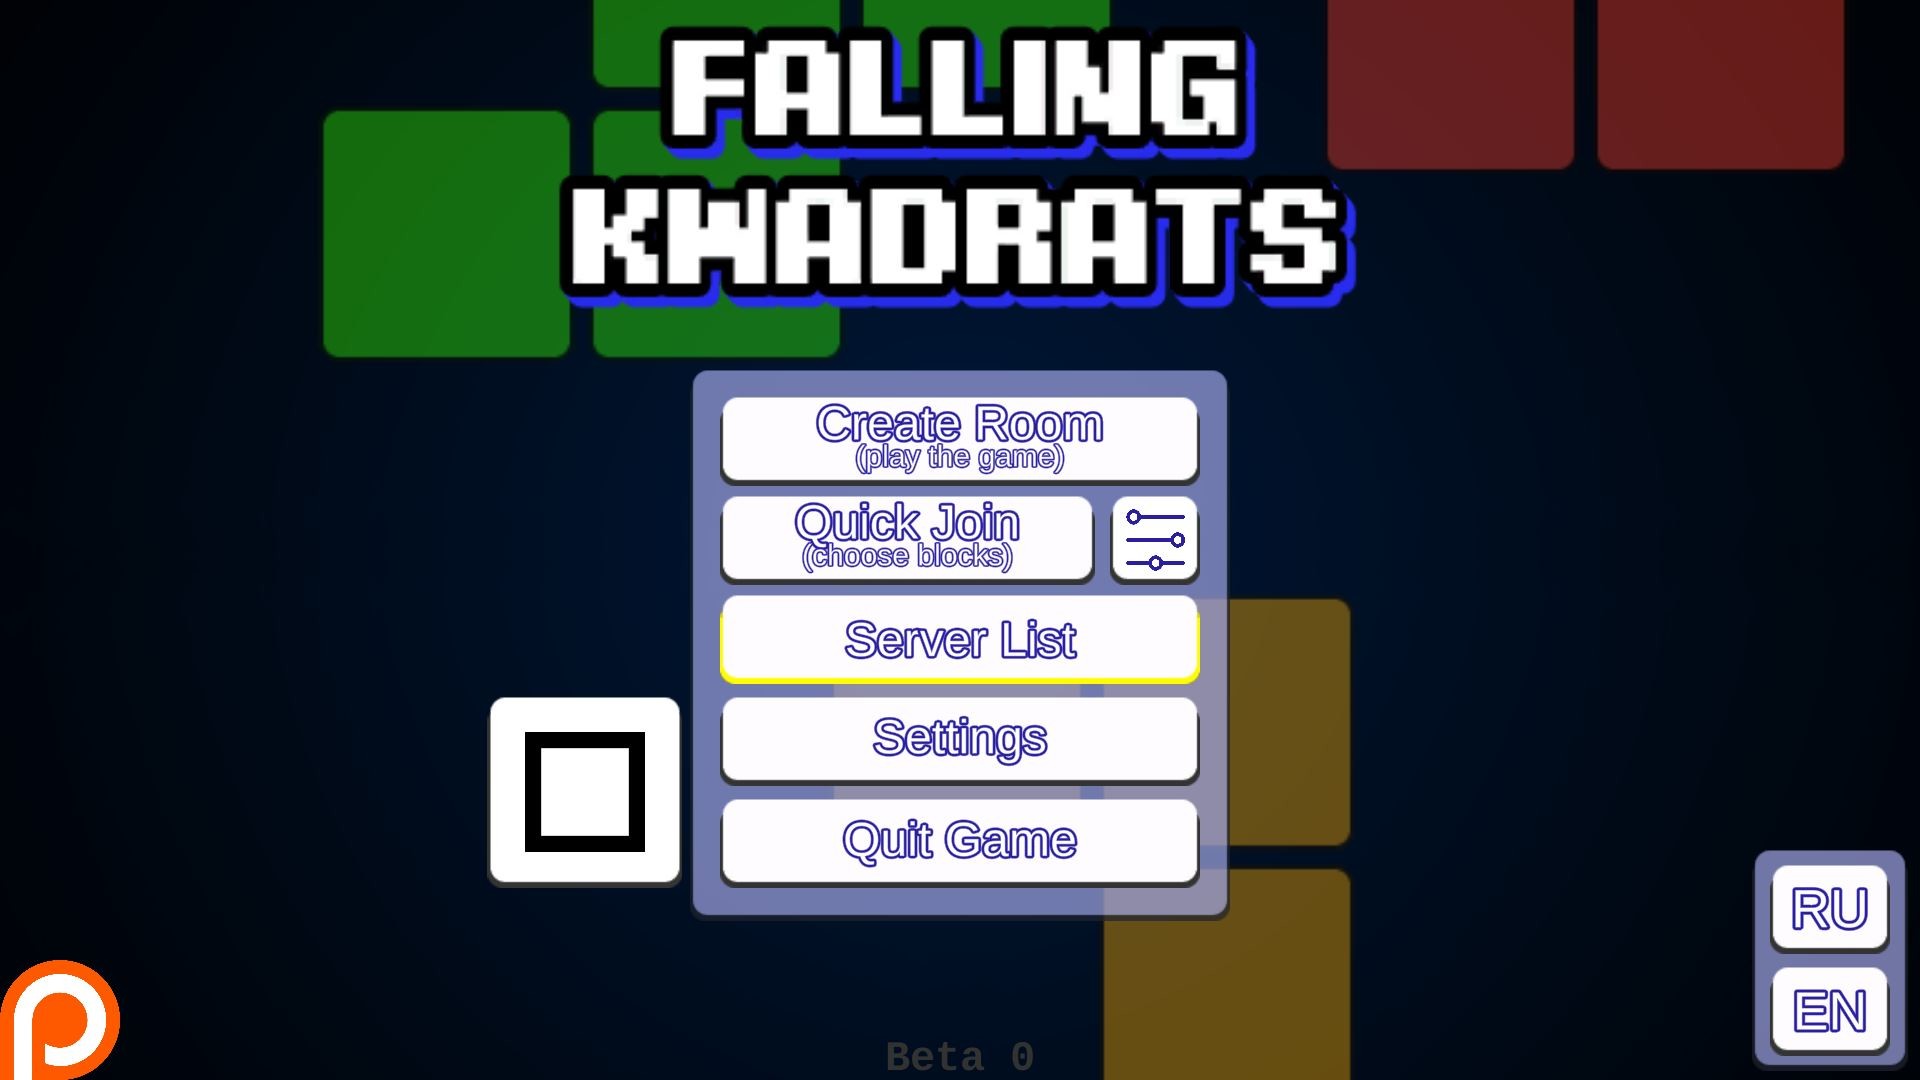 Falling Kwadrats Free Download